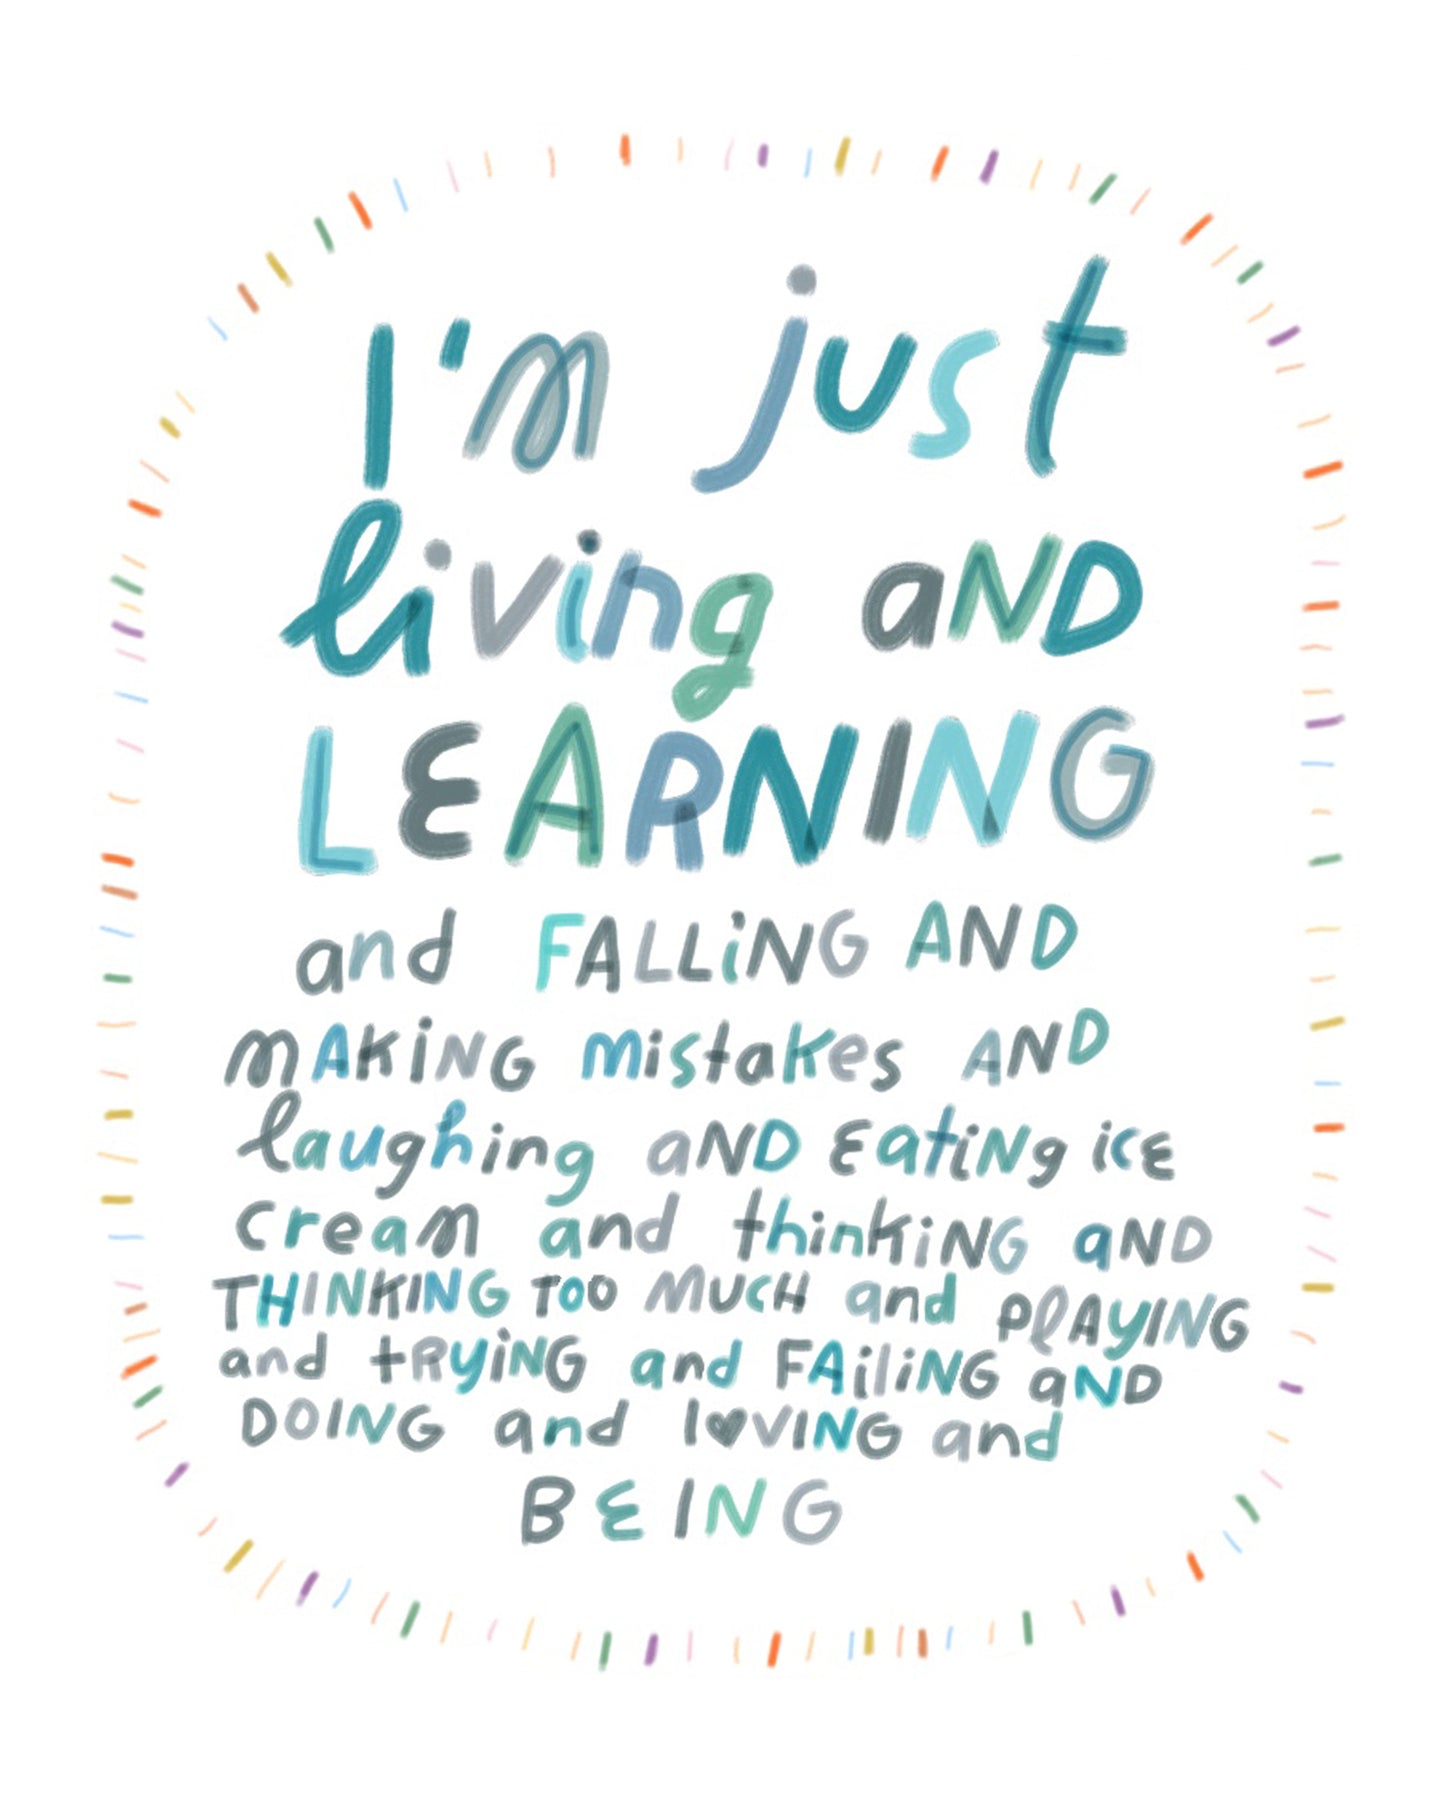 Living & Learning Art Print